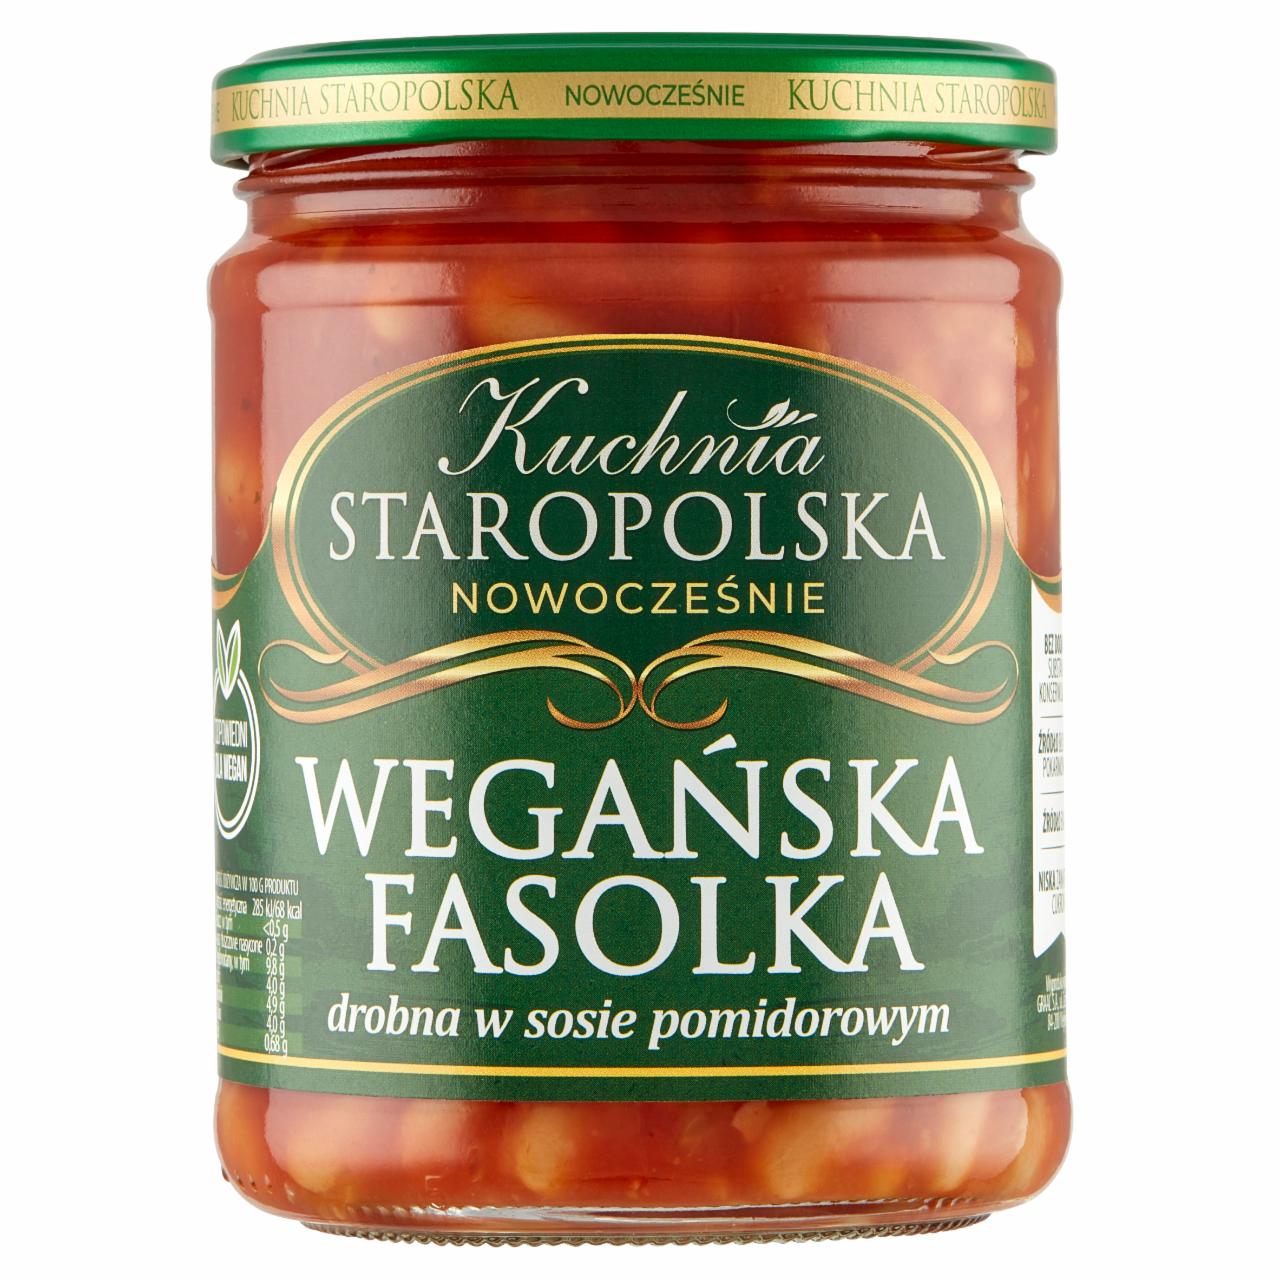 Zdjęcia - Kuchnia STAROPOLSKA Wegańska fasolka drobna w sosie pomidorowym 500 g